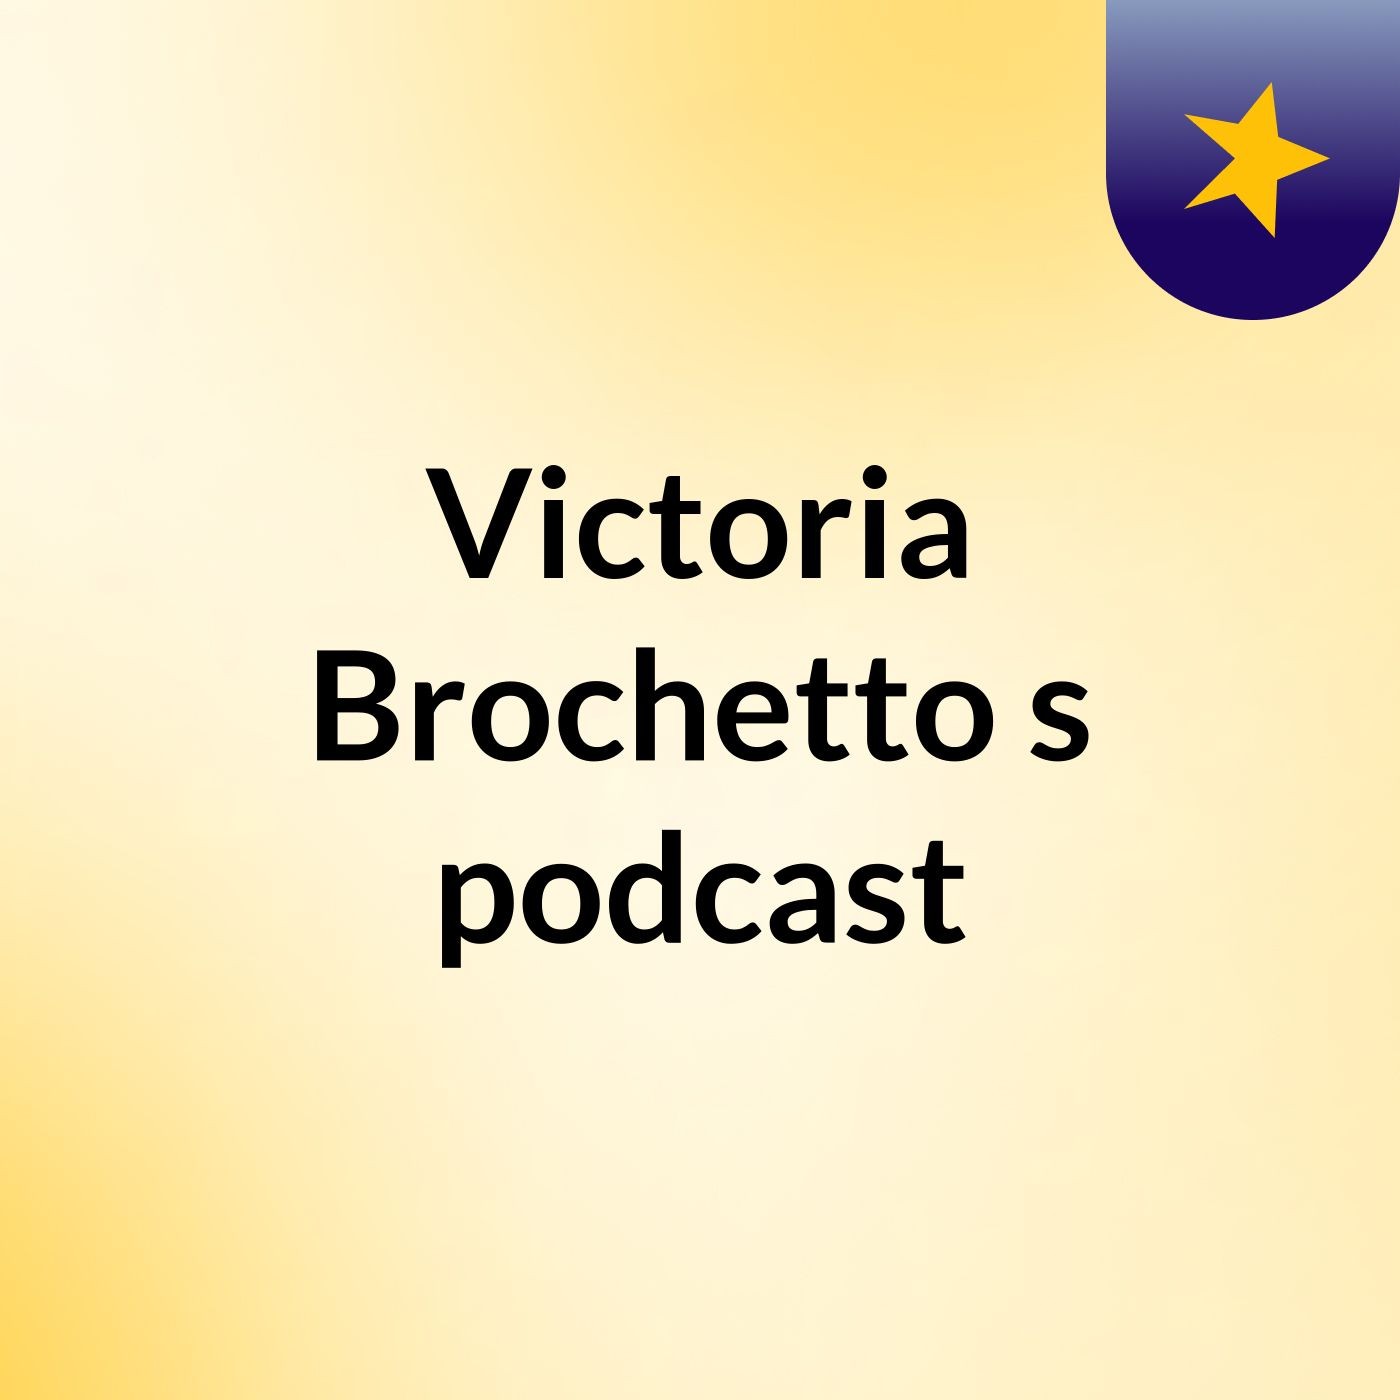 Victoria Brochetto's podcast